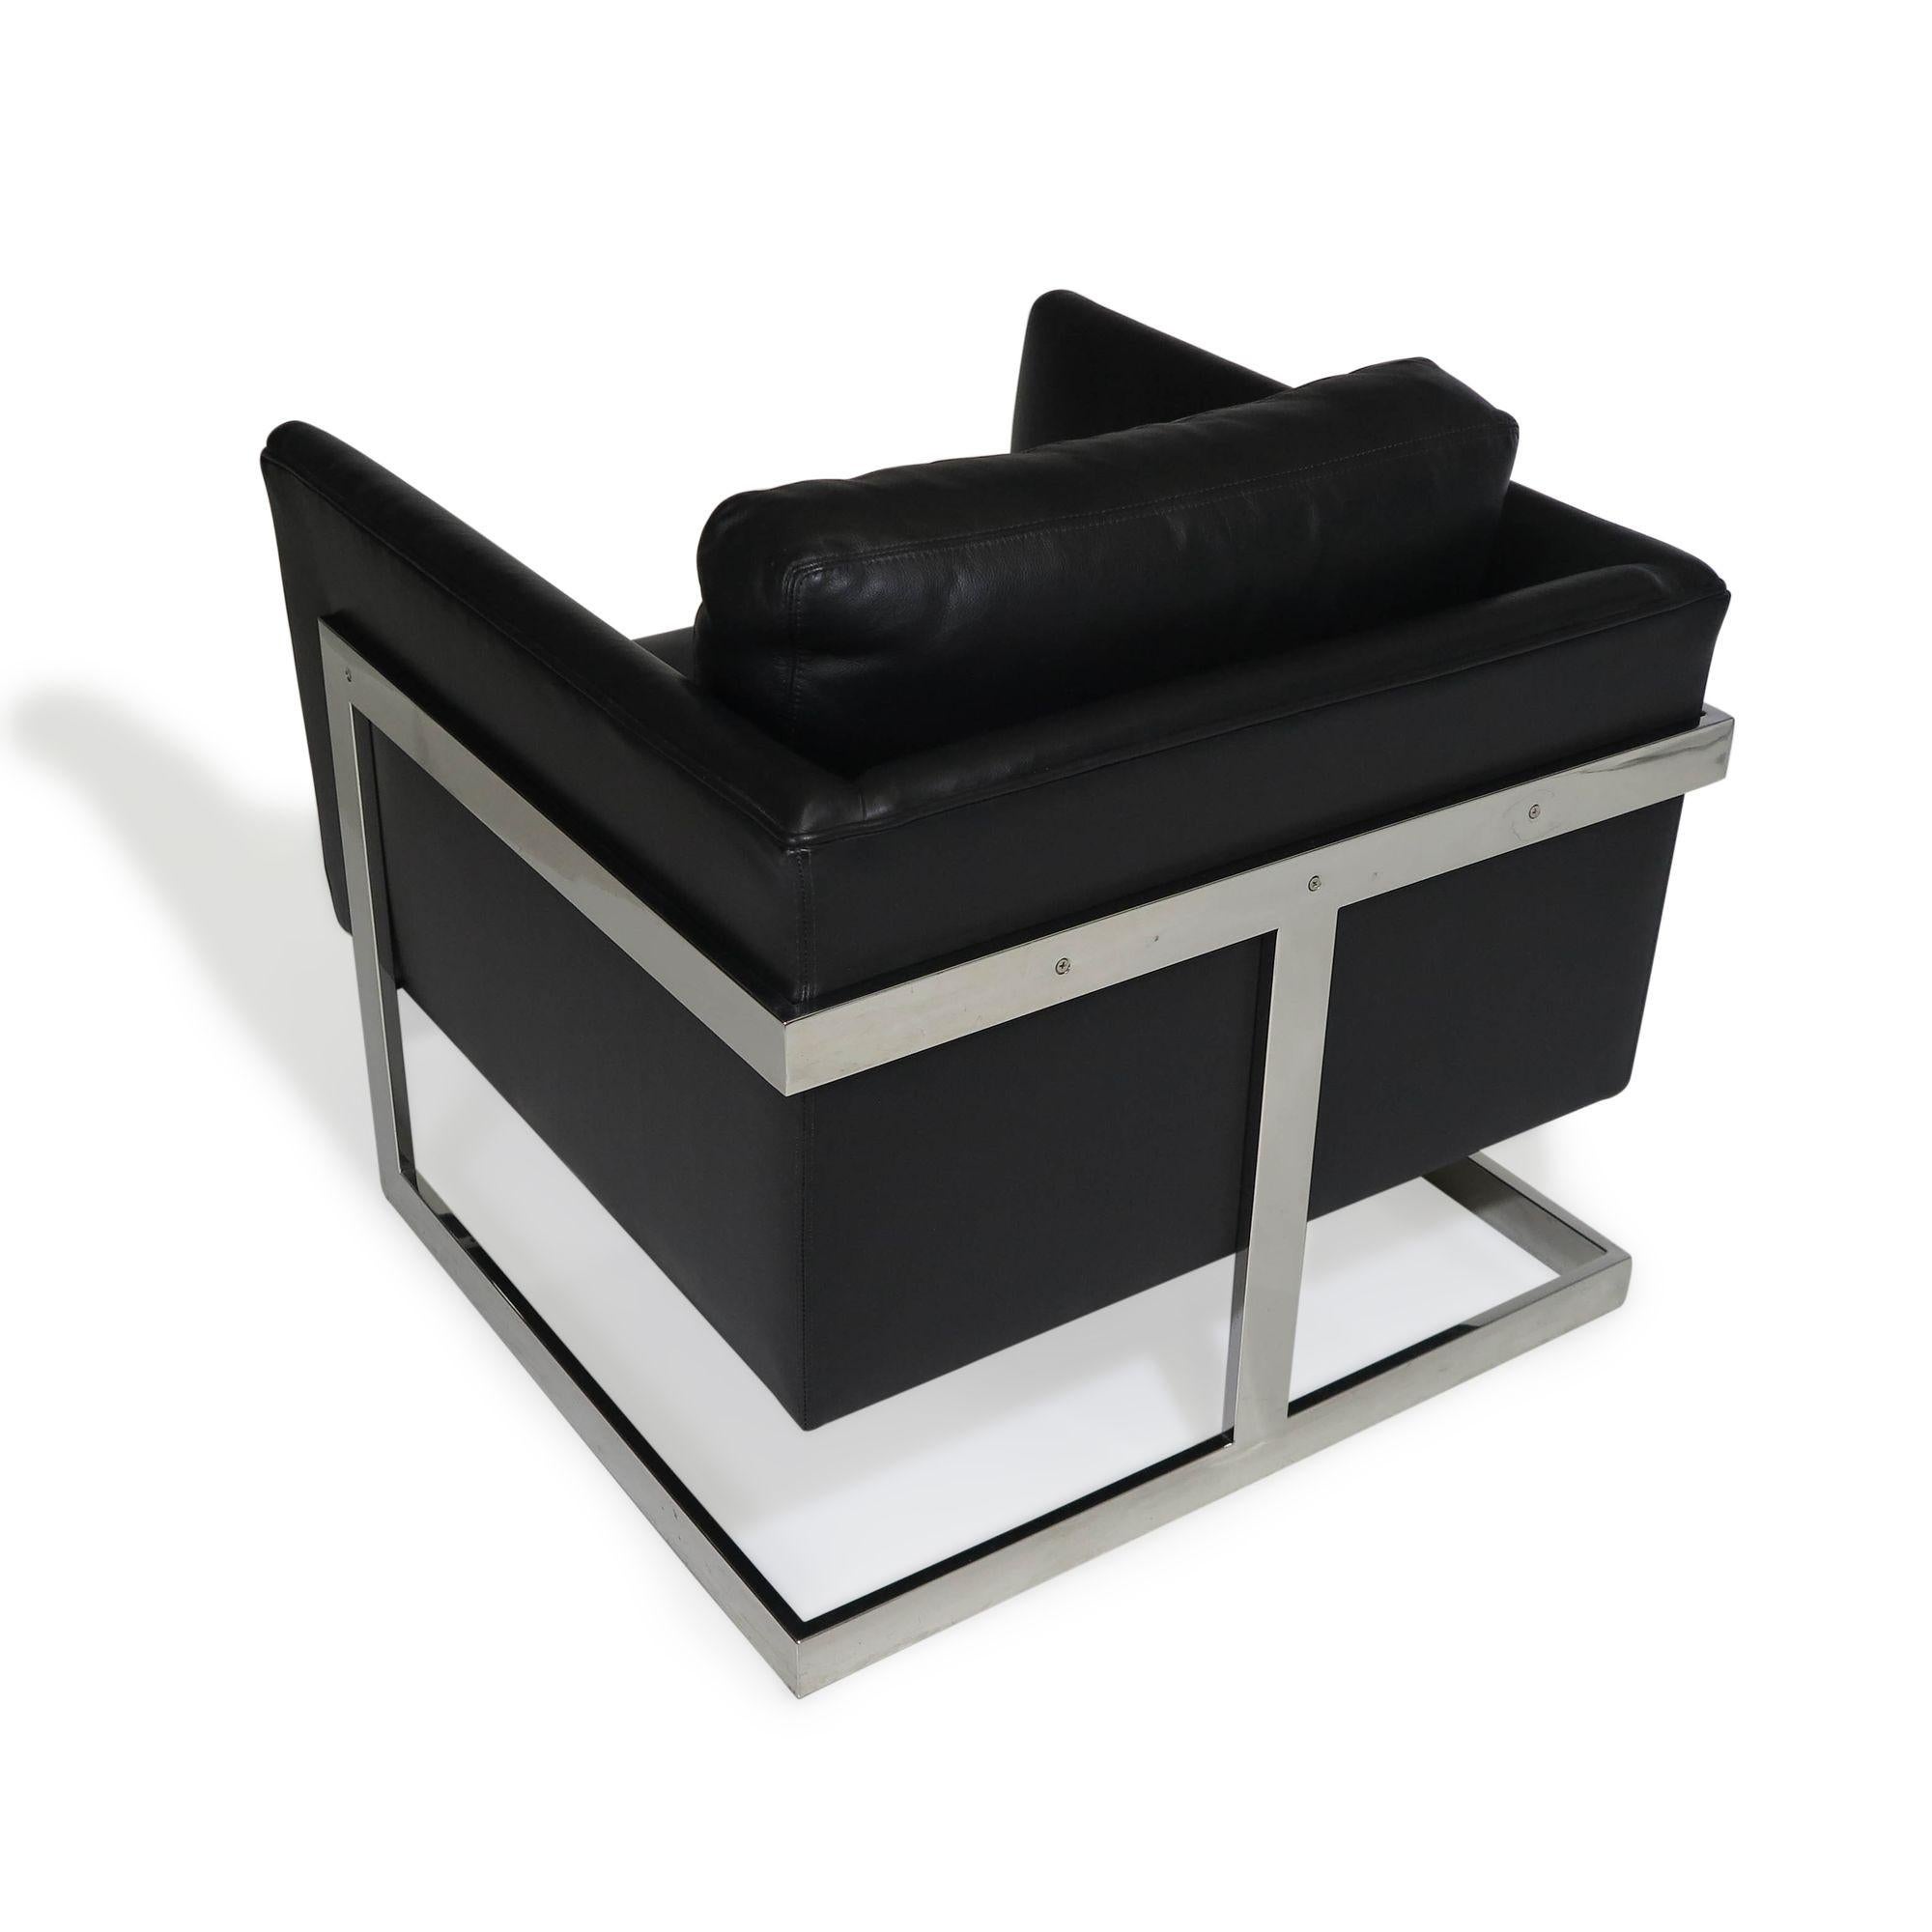 Milo Baughman für Thayer Coggin Loungesessel mit verchromtem Flachstangengestell und schwarzem Leder.
Abmessungen B 29'' x T 31'' x H 30''
Sitzhöhe 16.50''